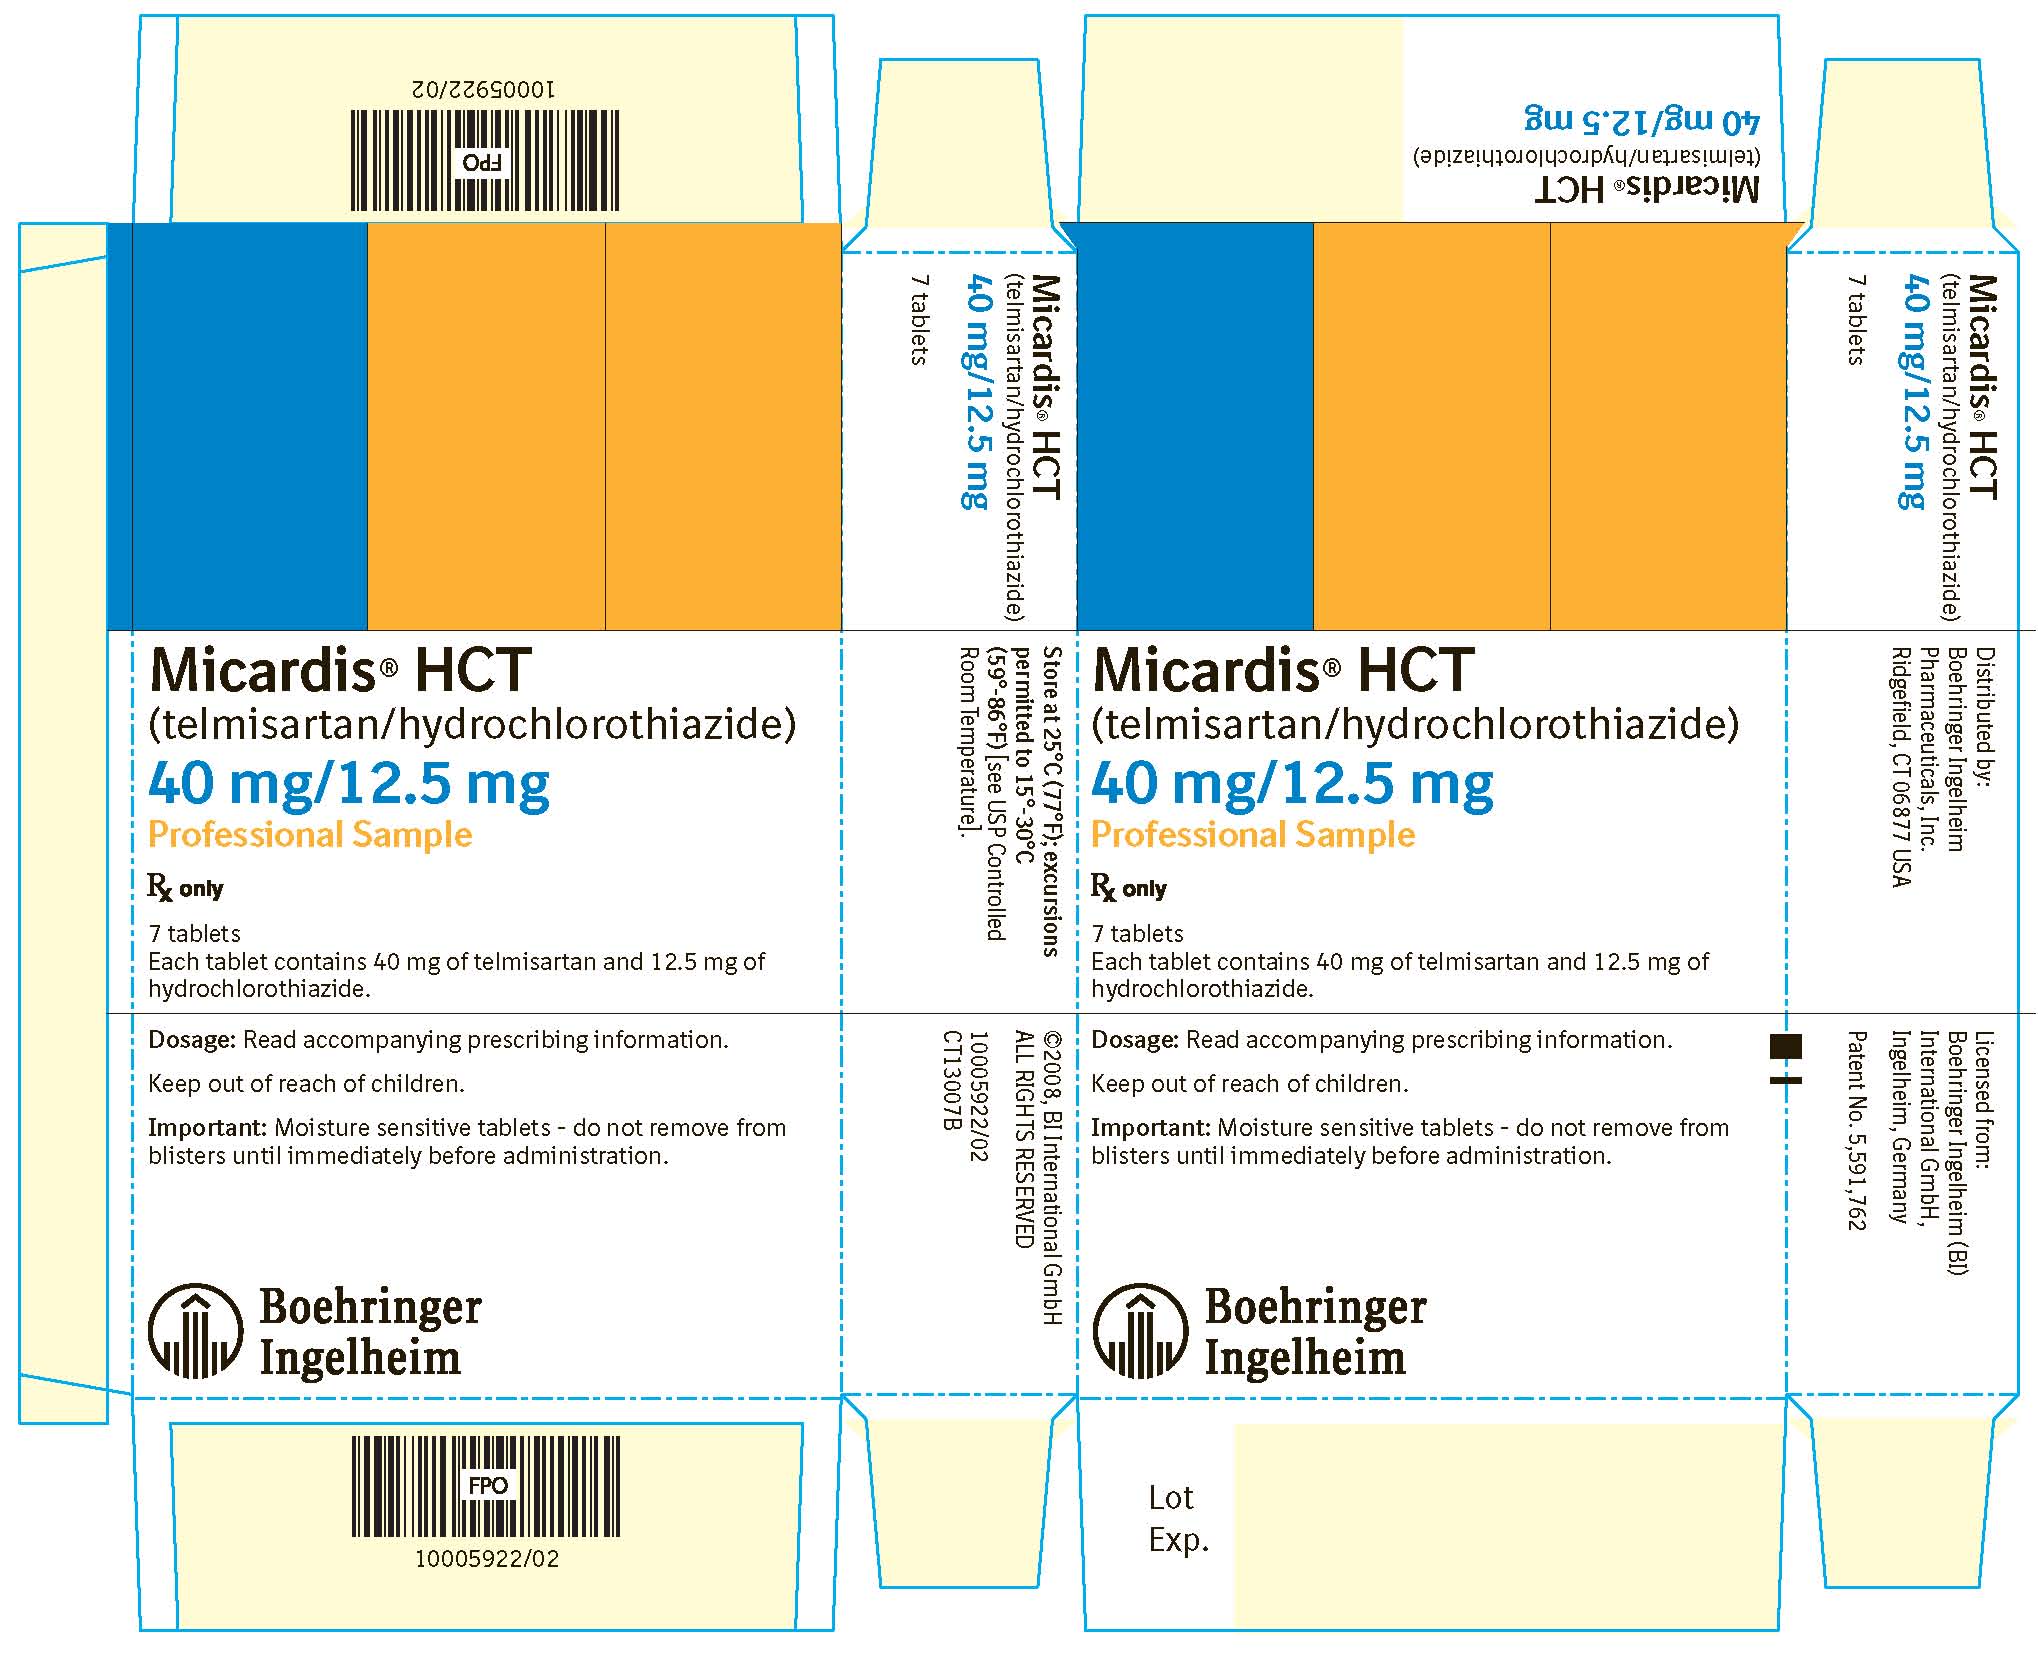 Micardis HCT 40 mg/12.5 mg 7 Tablets NDC 0597-0043-70